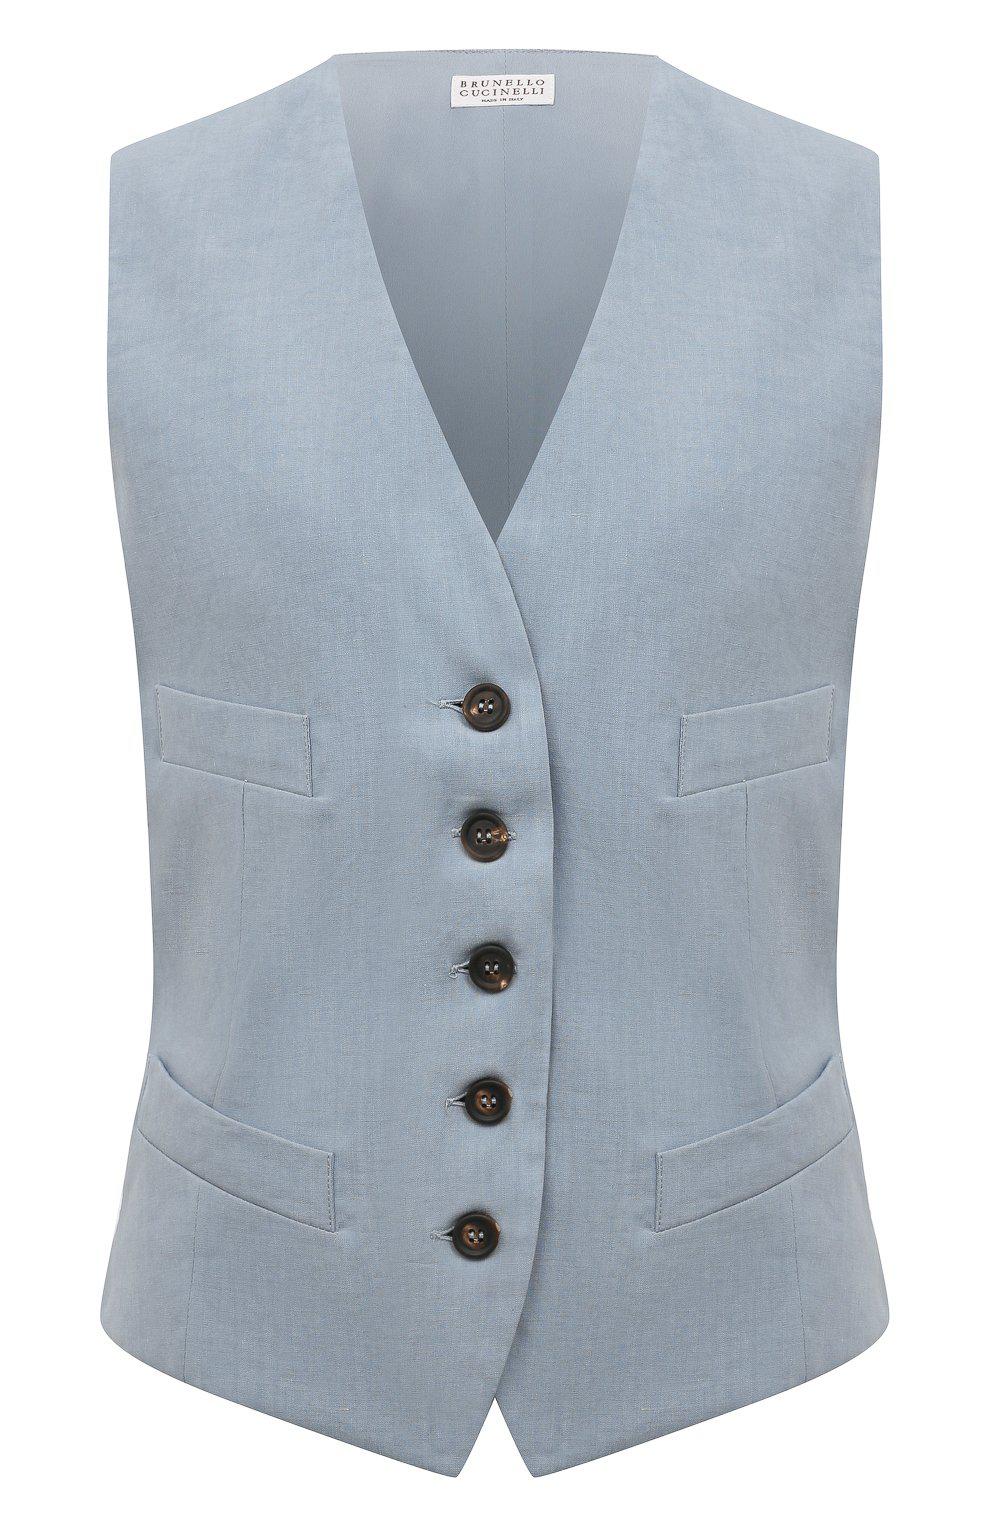 Linen and silk vest, Brunello Cucinelli, RUB 236,500.